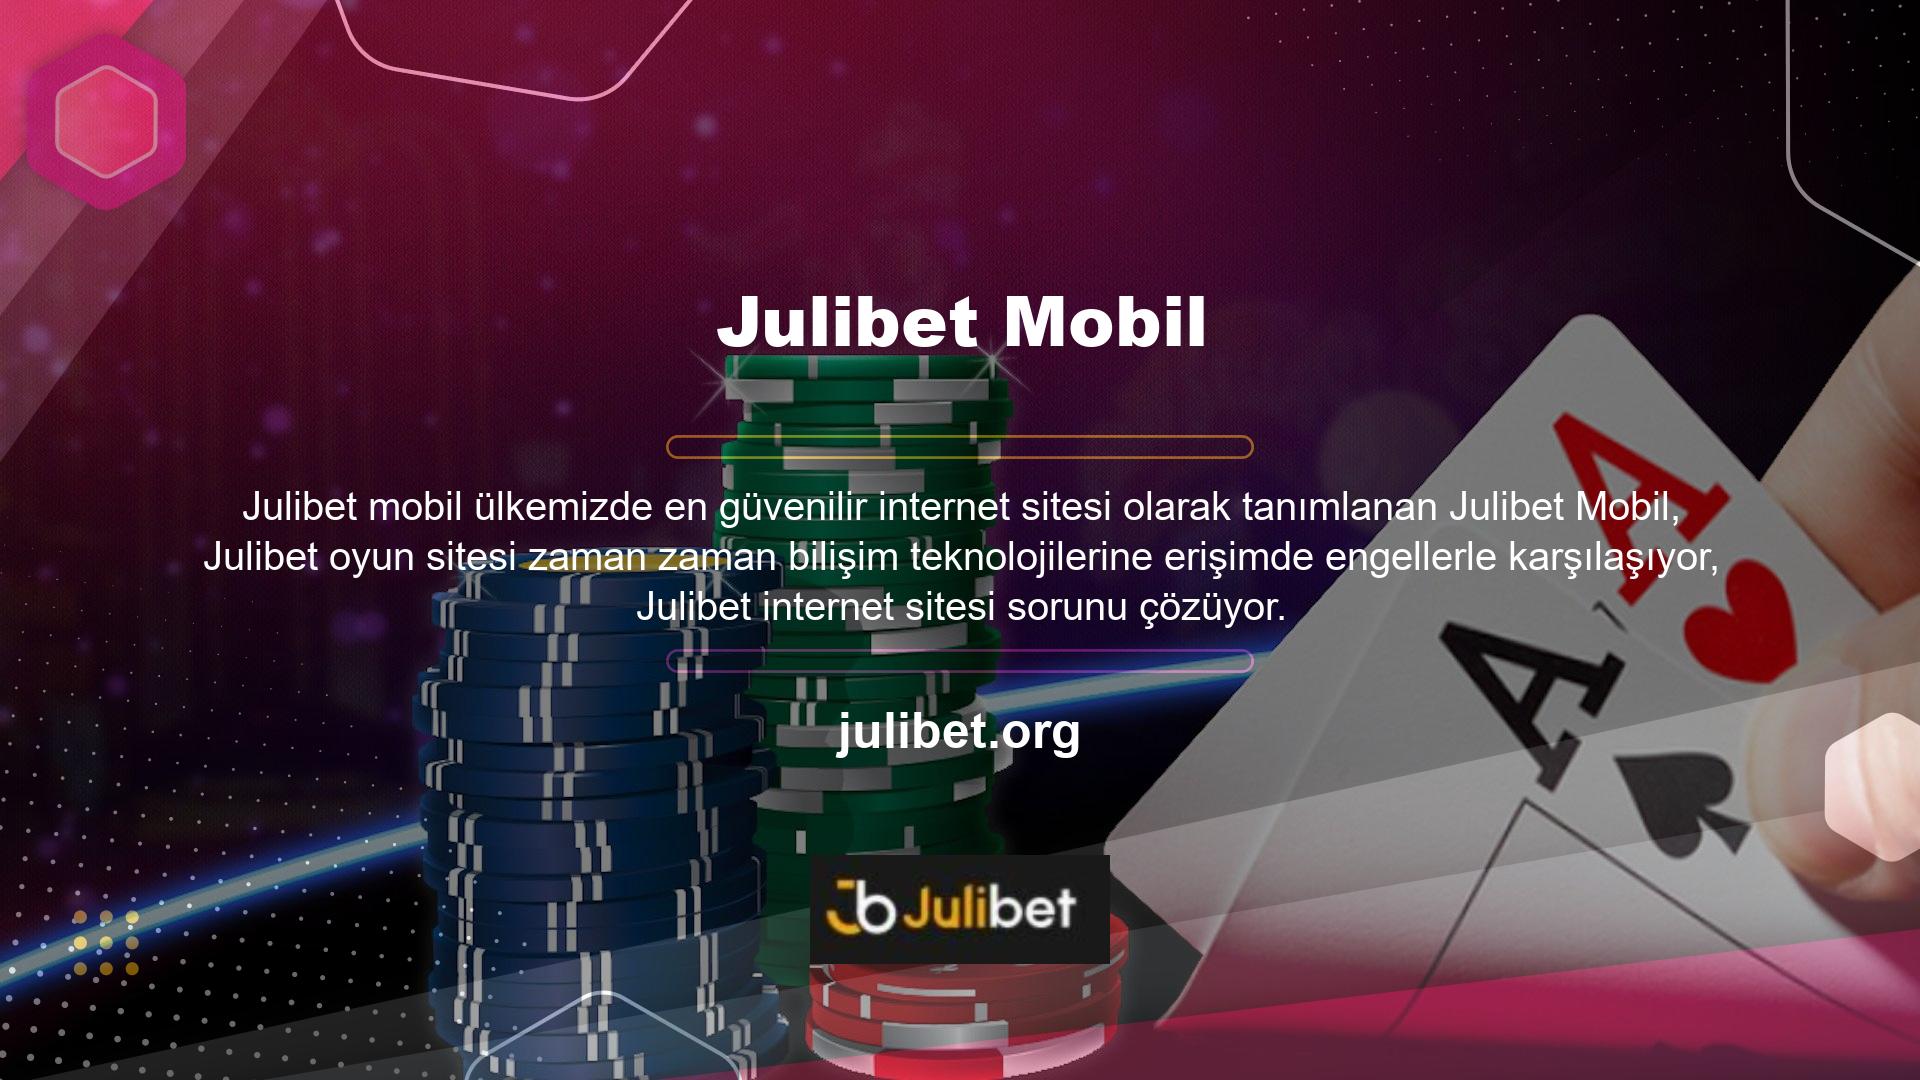 Julibet sitelerinin eski üyeleri eski hak ve kazançlarını kaybetmezler